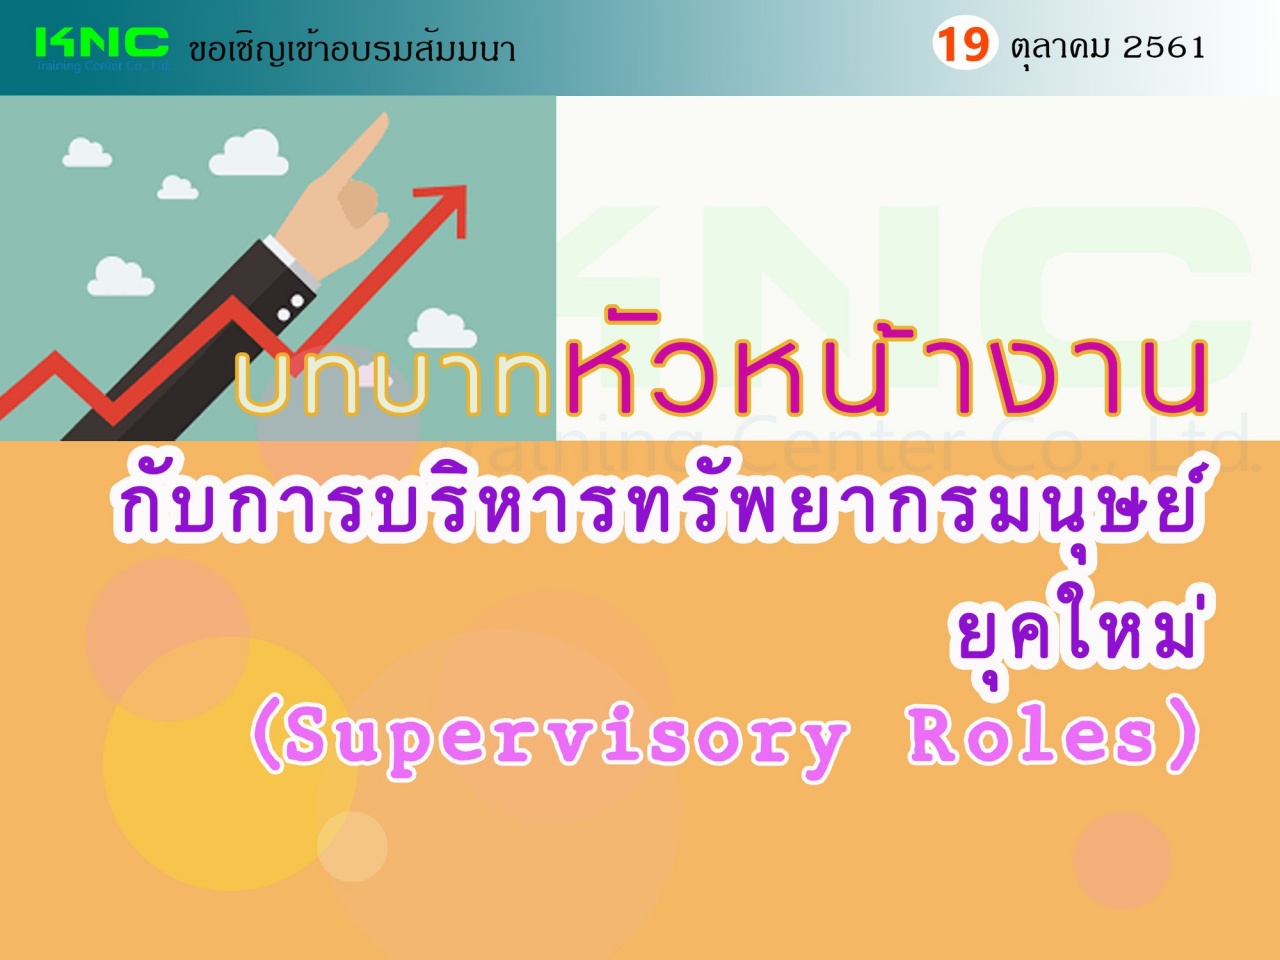 บทบาทหัวหน้างานกับการบริหารทรัพยากรมนุษย์ยุคใหม่ (Supervisory Roles)